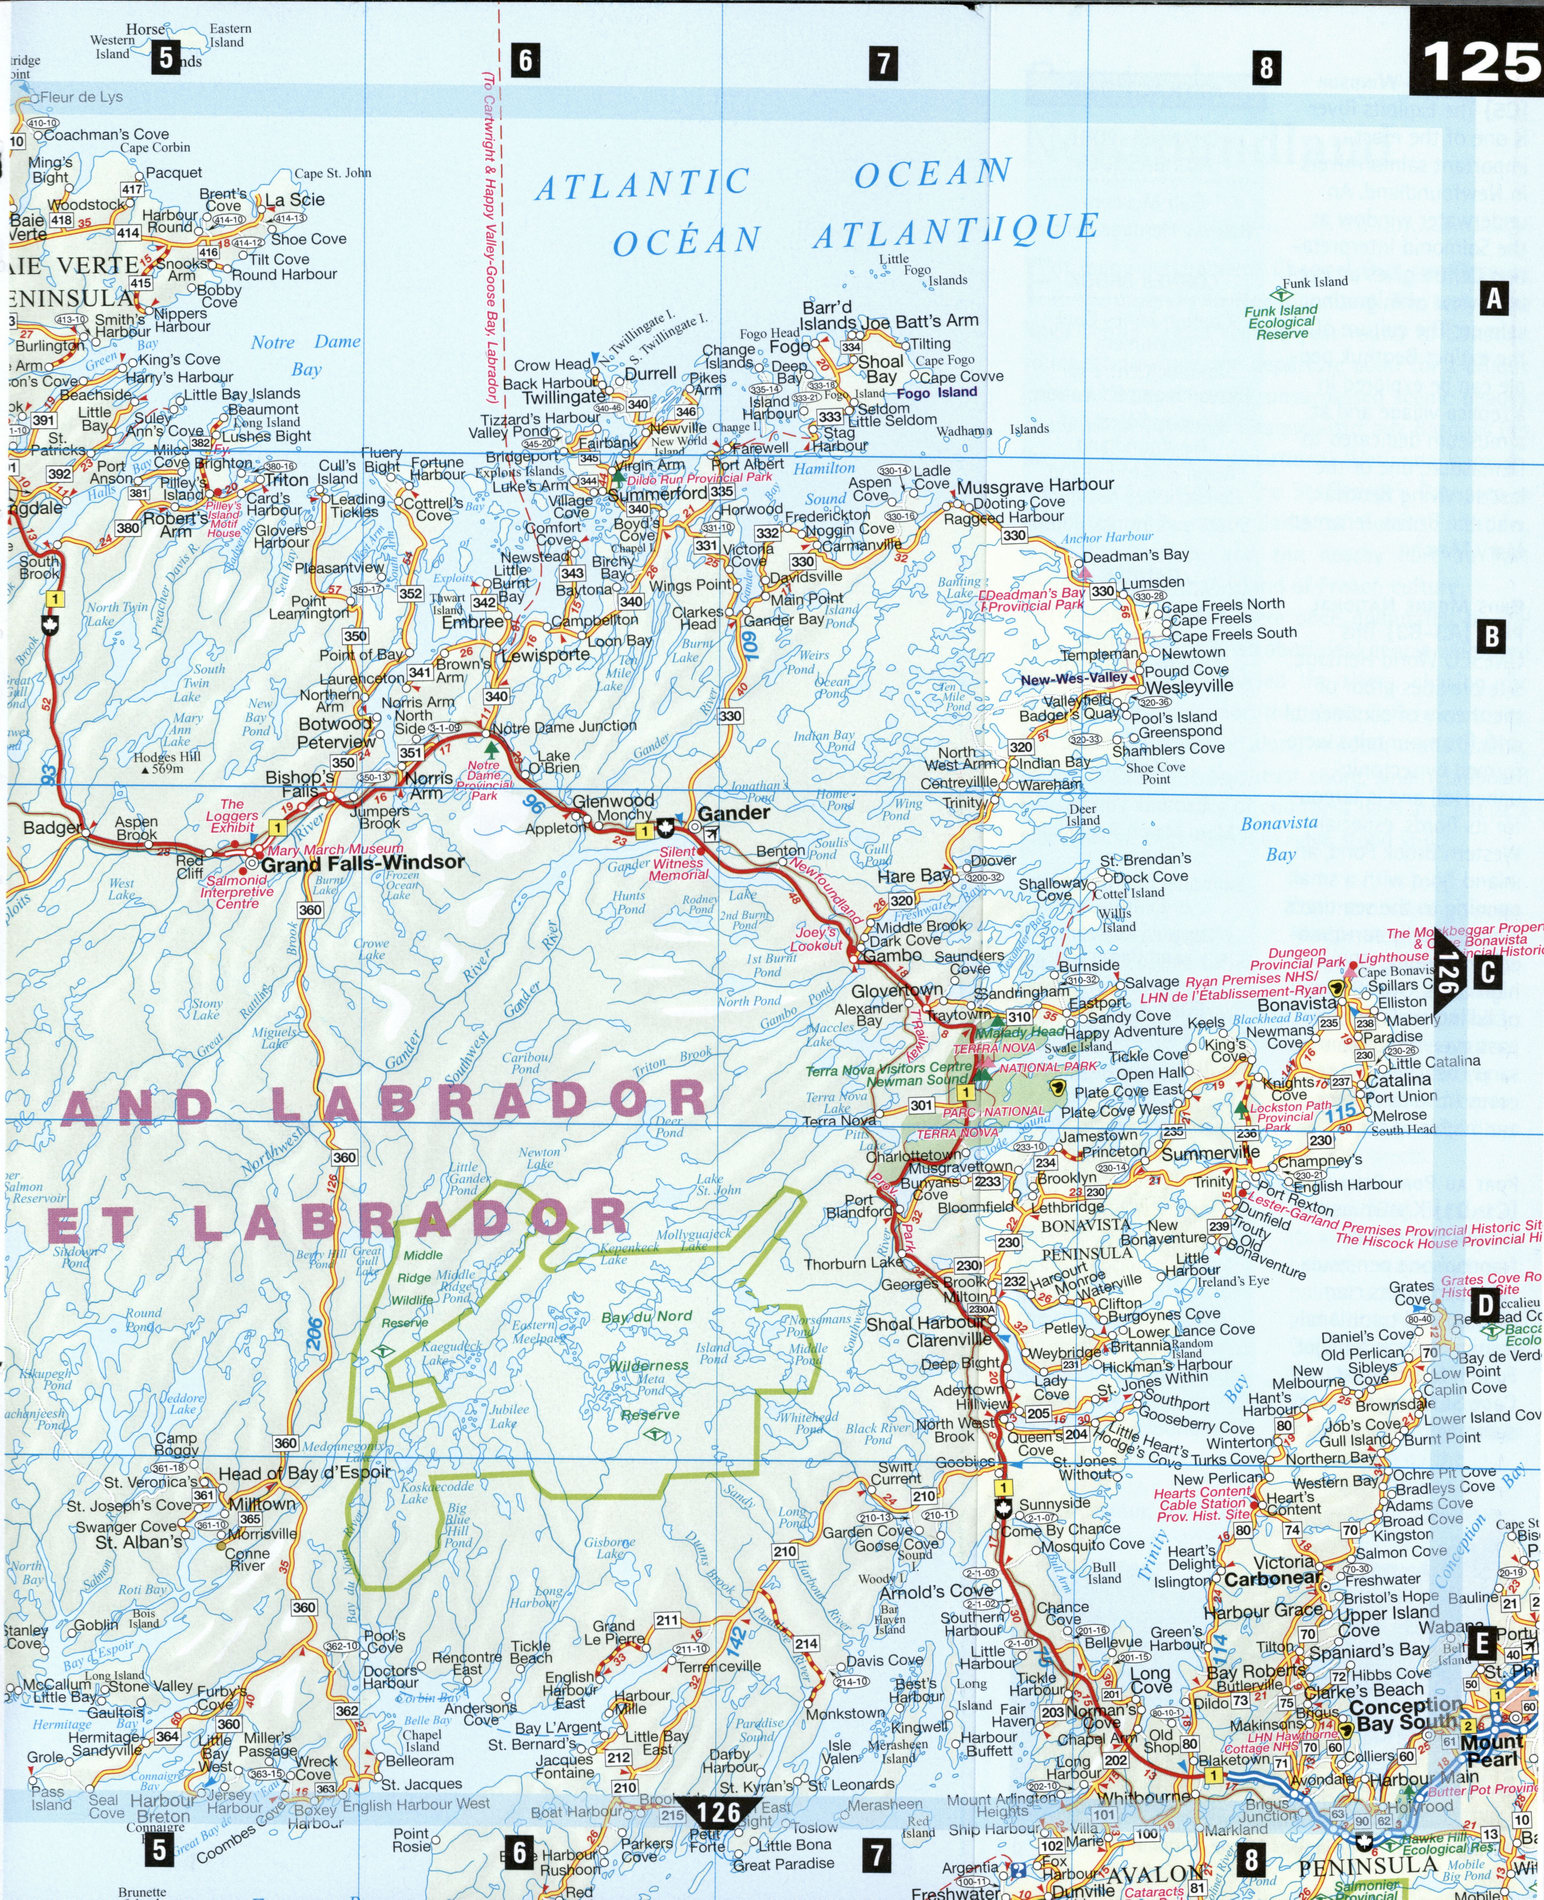 Detailed map of Newfoundland and Labrador